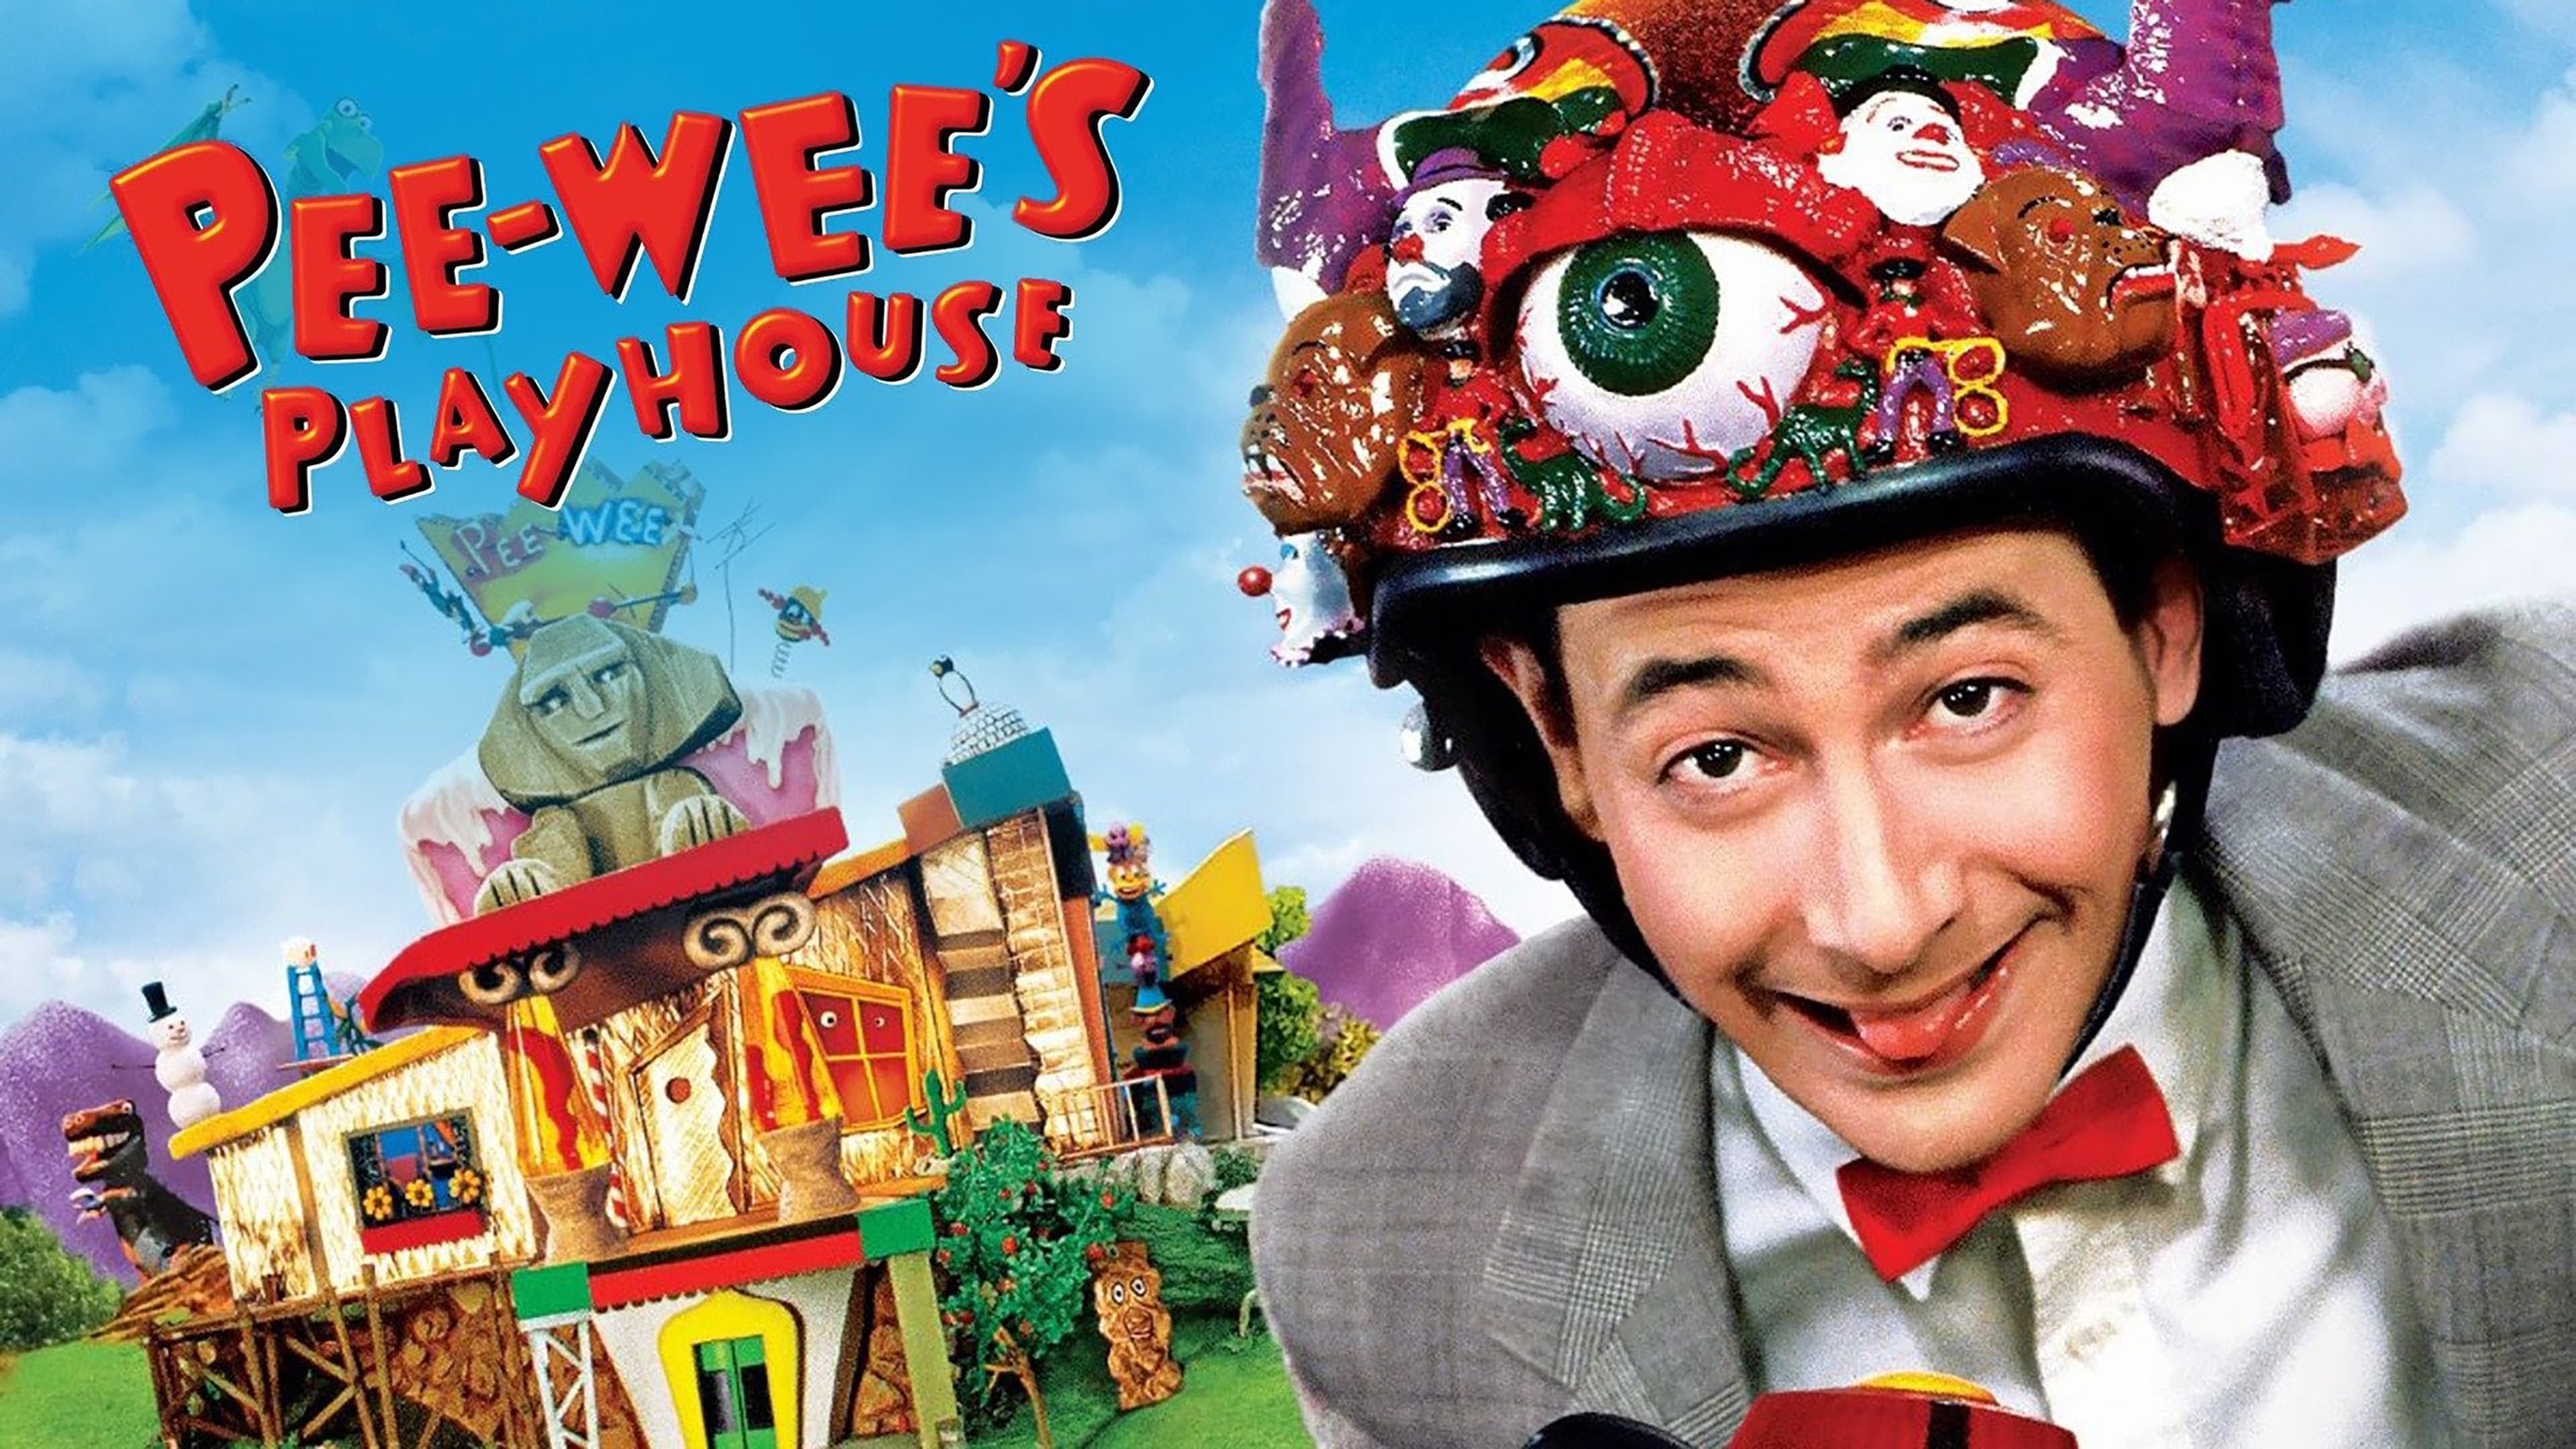 Watch Pee-Wee's Playhouse Online